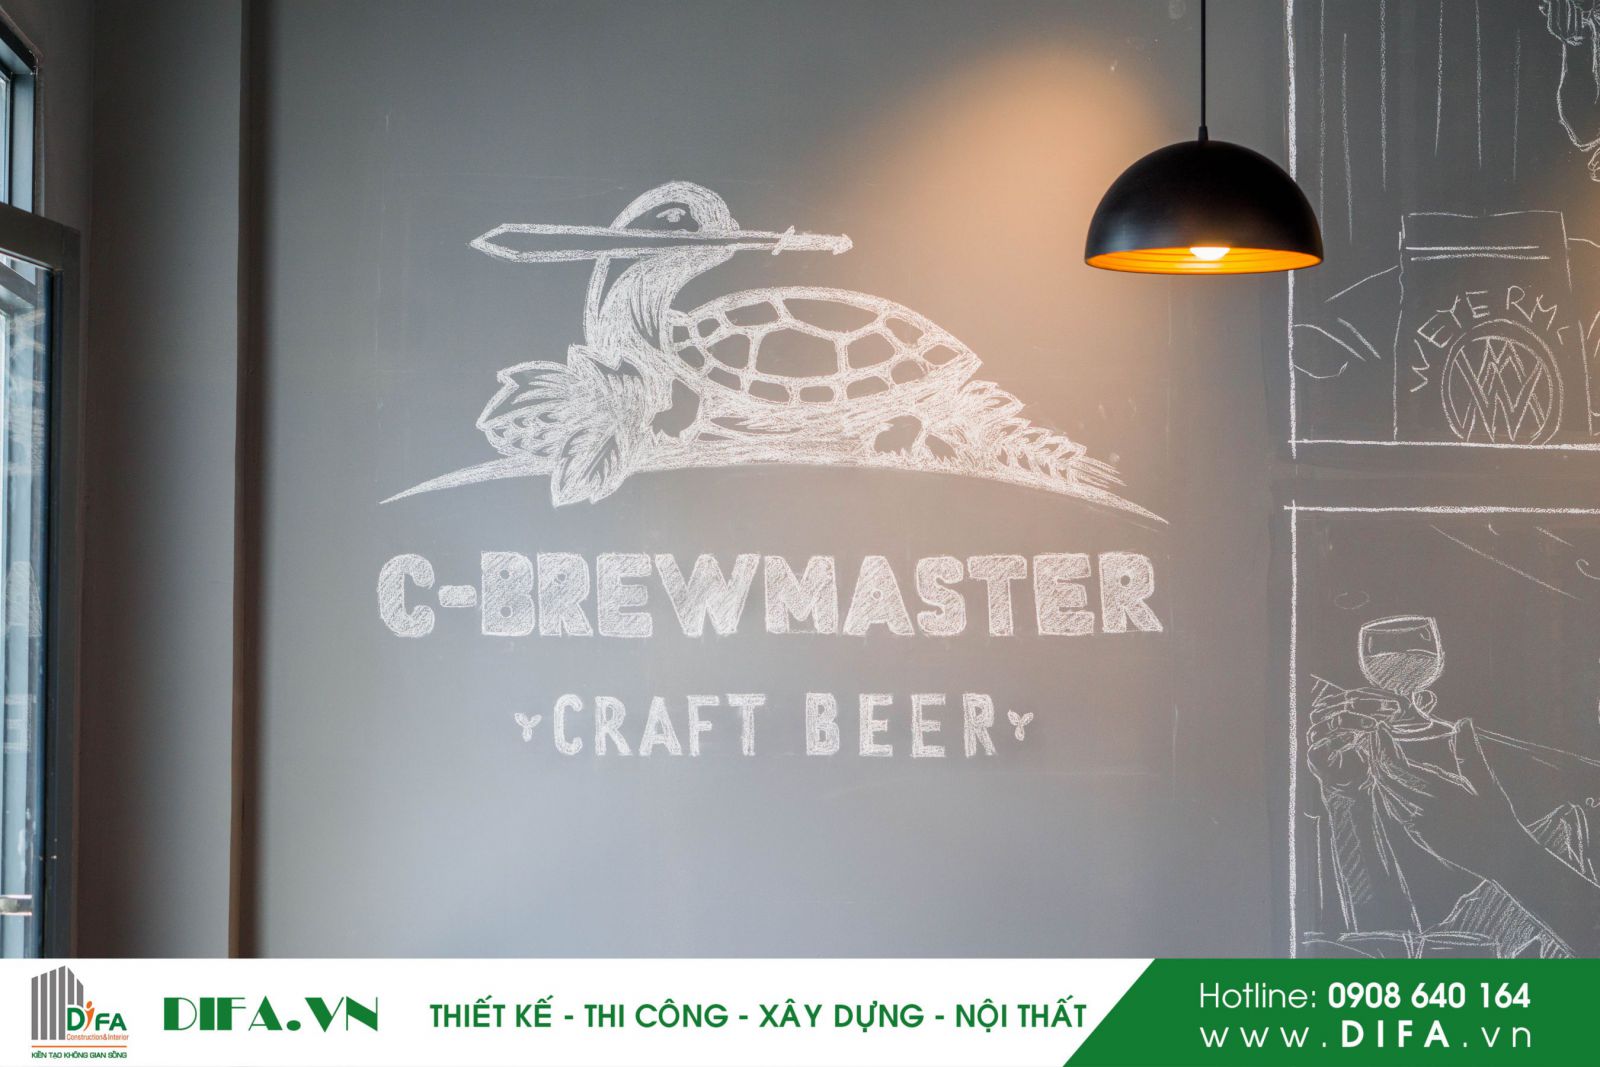 Thiết kế thi công nhà hàng đẹp - Nhà hàng bia C-brewmaster | Diệp Gia